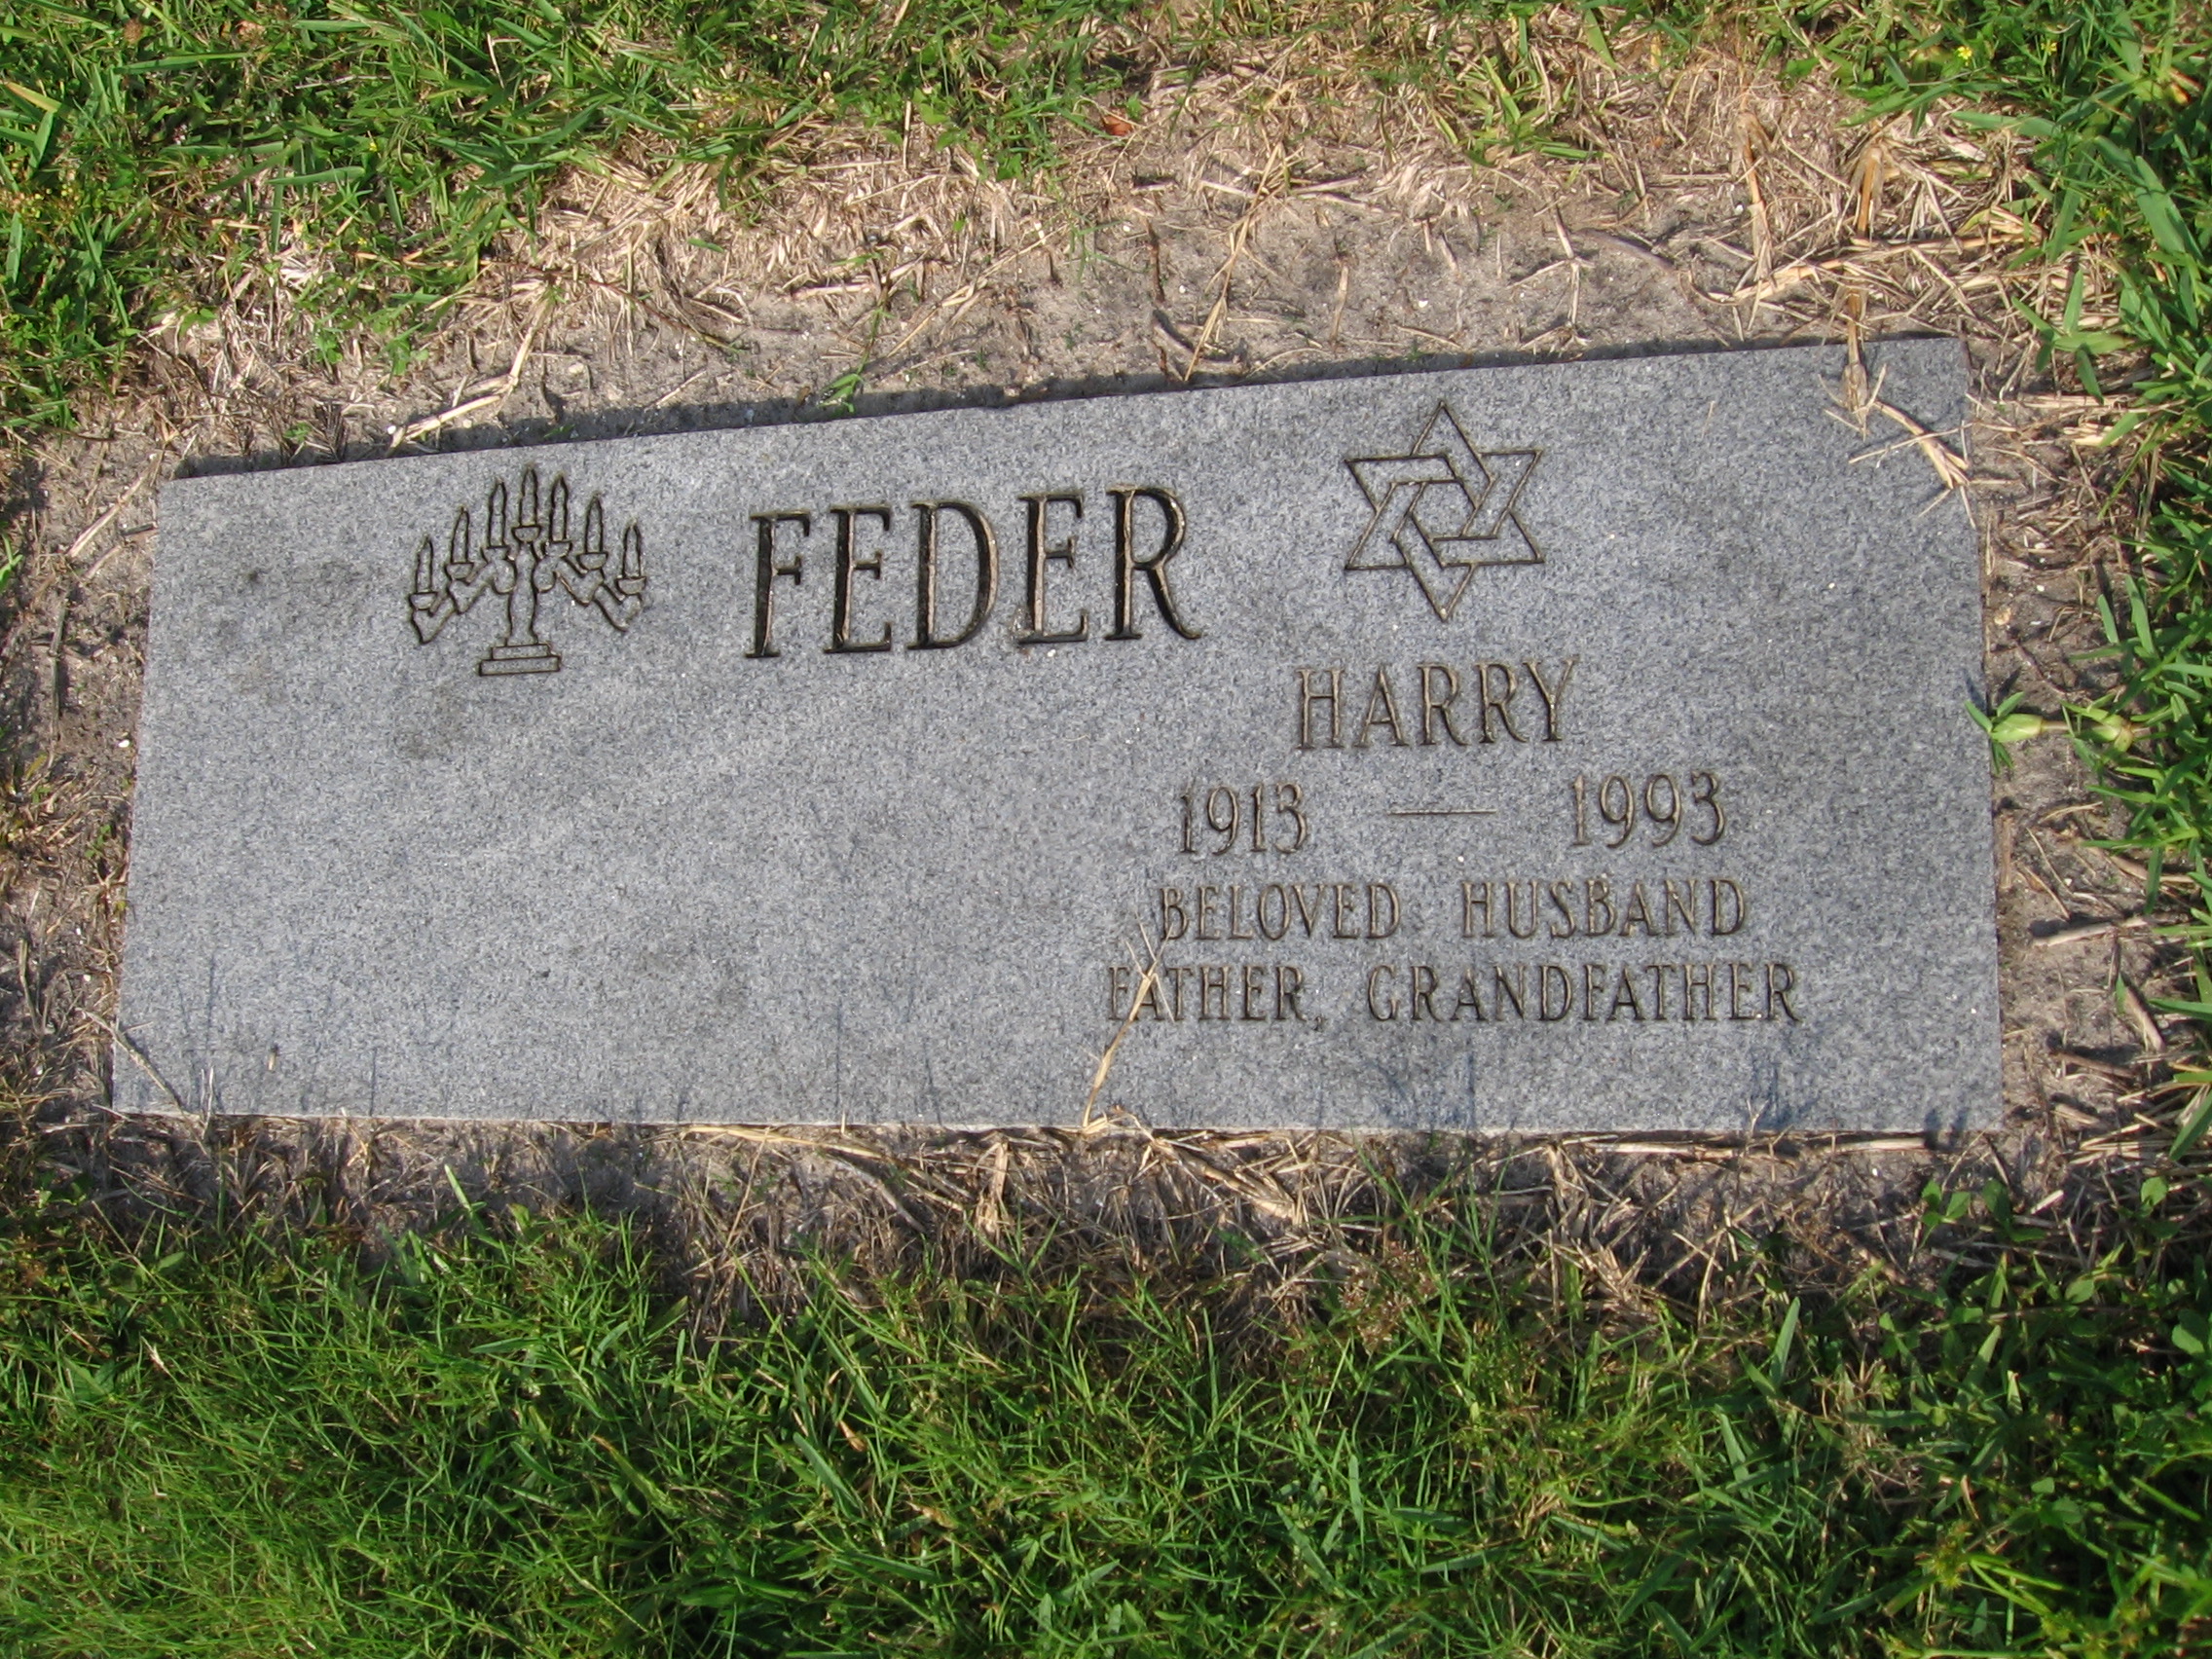 Harry Feder